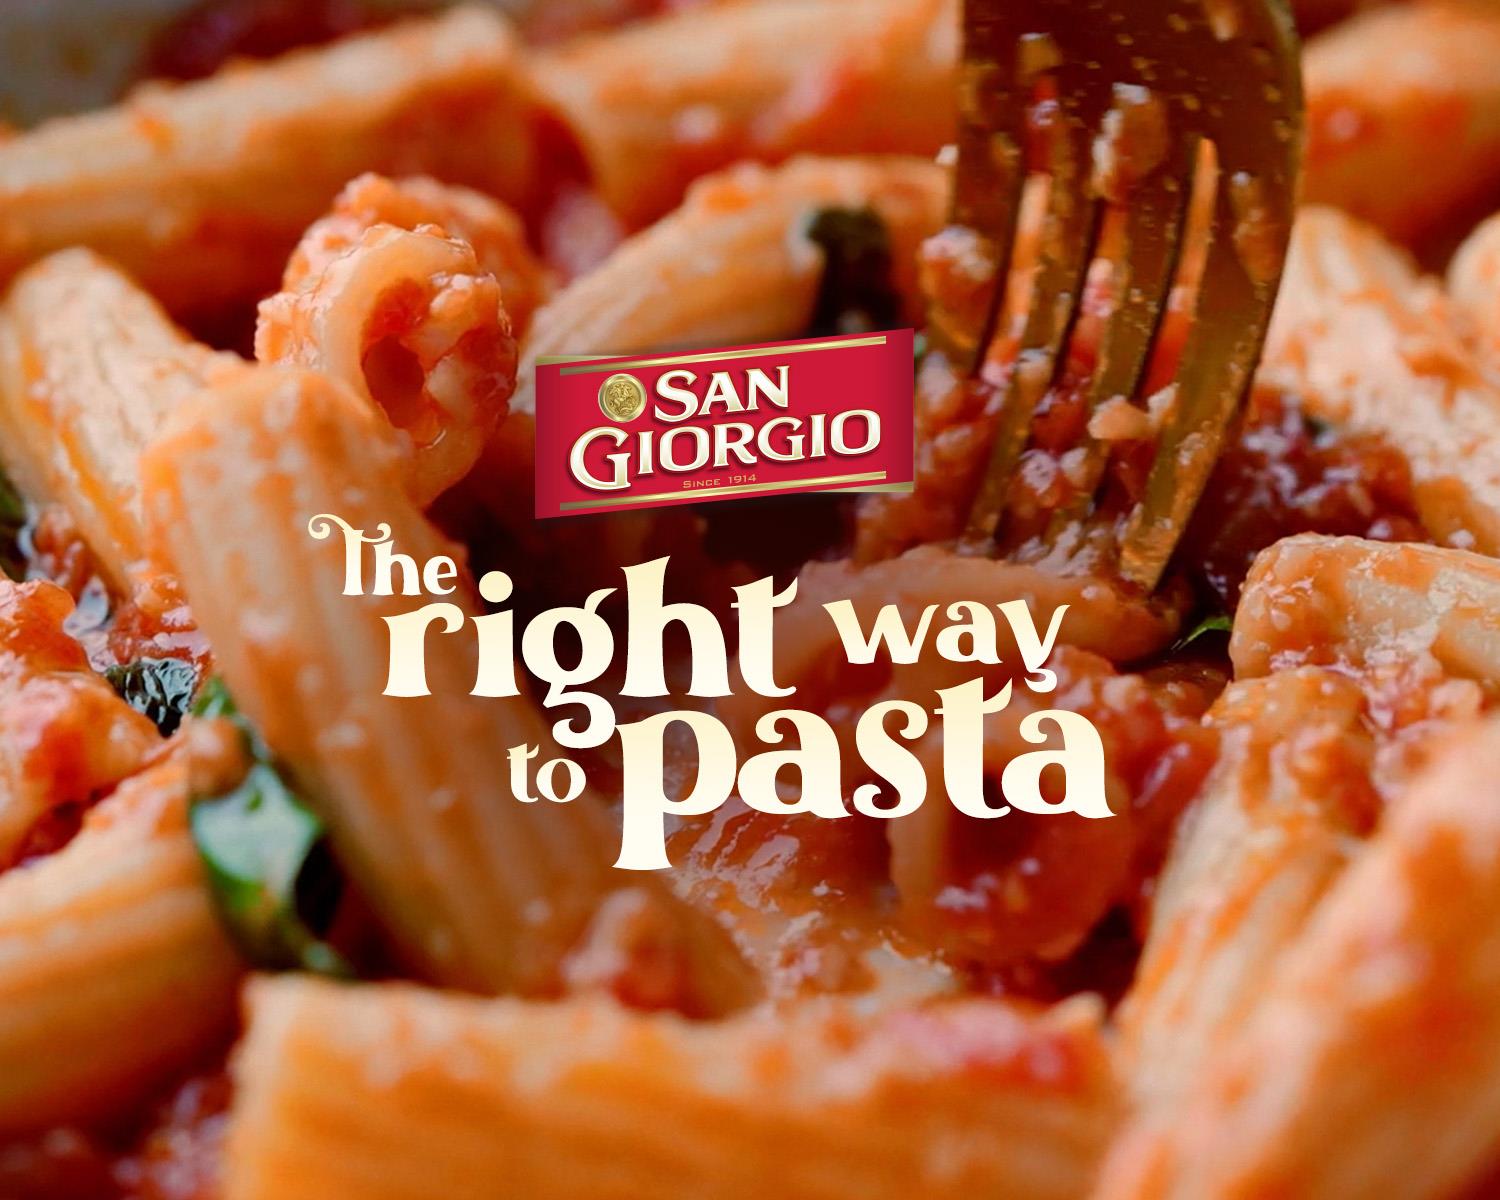 San Giorgio: Pasta the Right Way